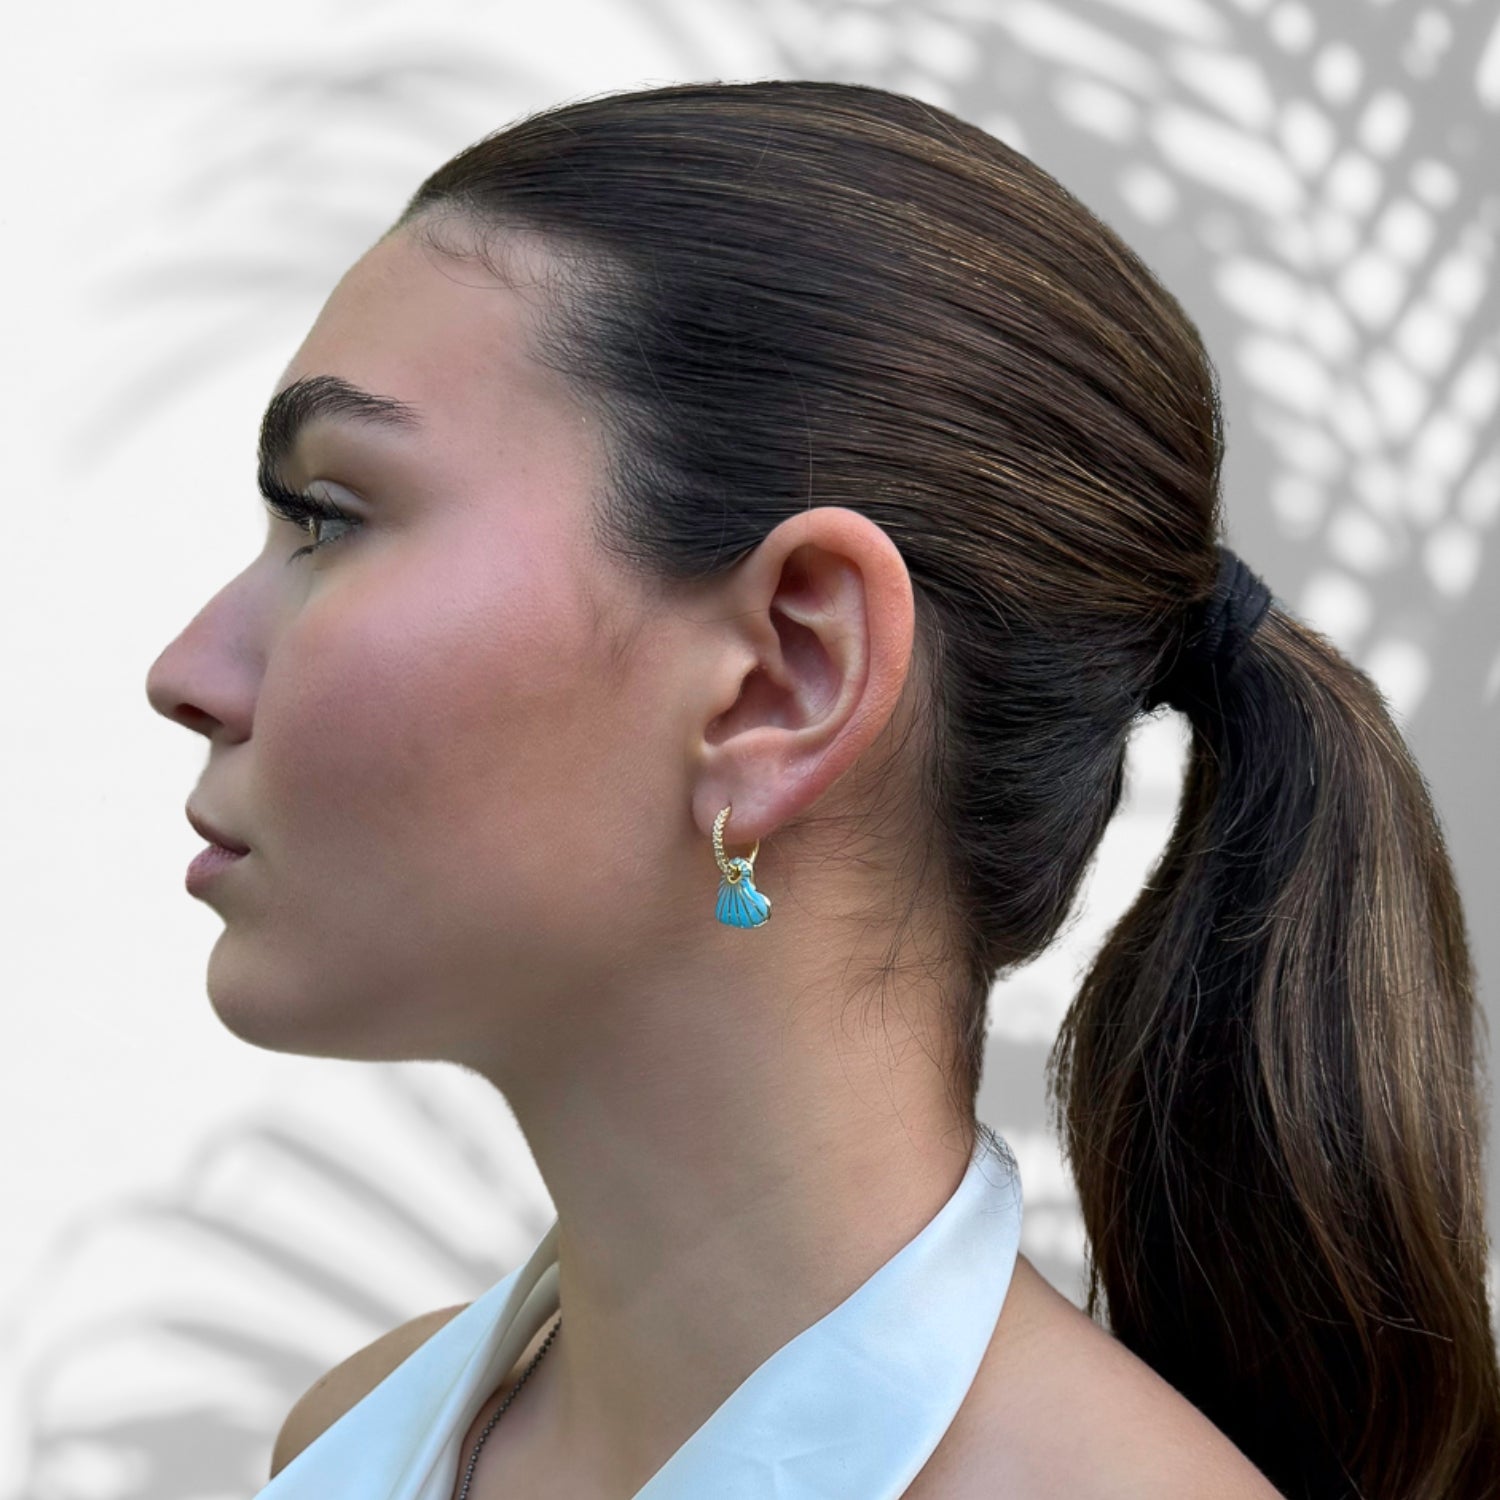 Chic and Glamorous: Model Wearing Blue Enamel Hoop Earrings